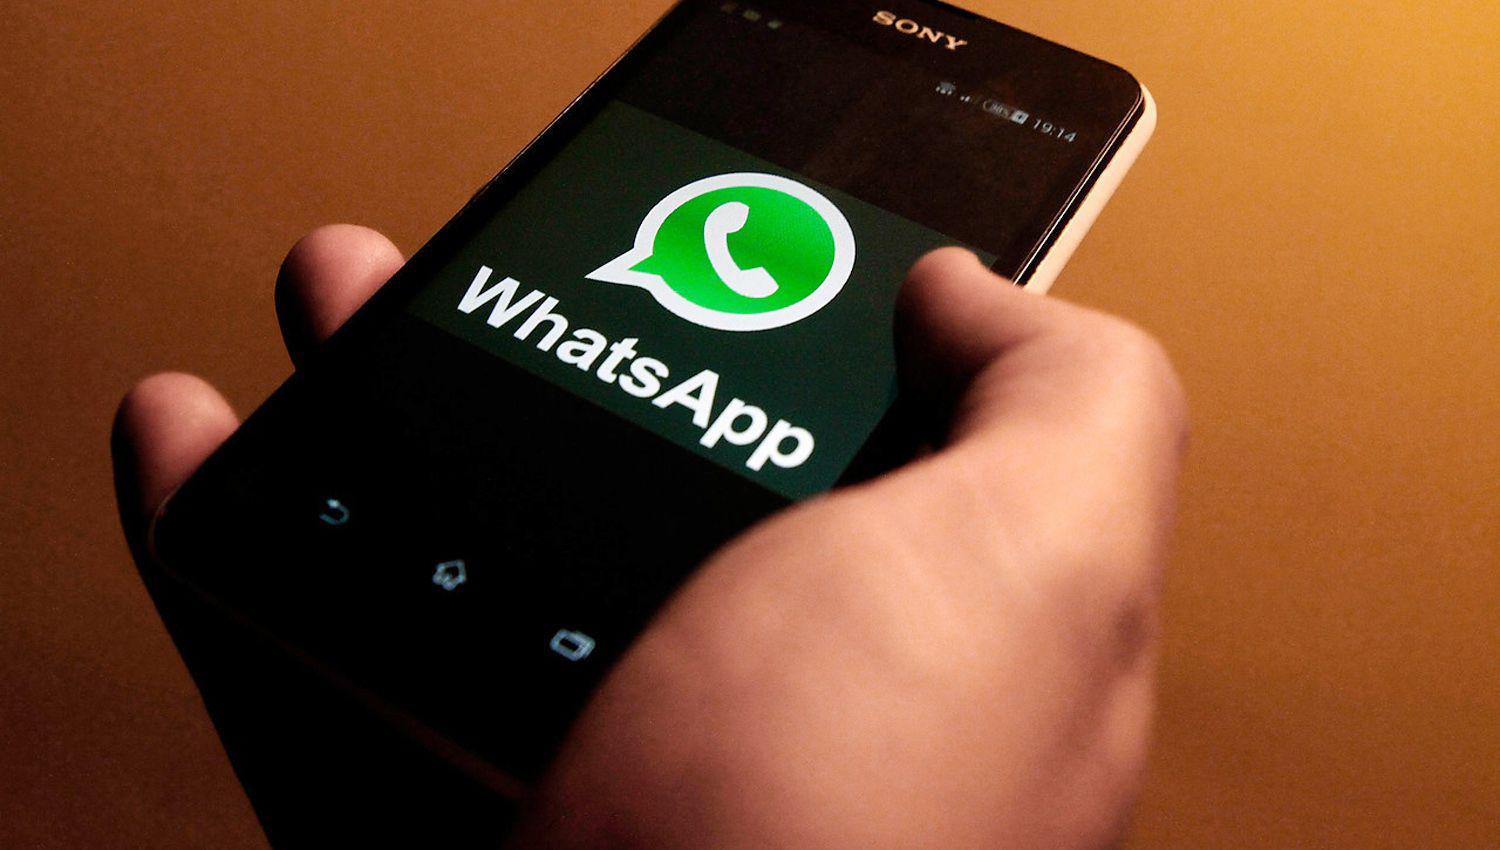 WhatsApp bloquearaacute cuentas sin aviso a quieacutenes hagan esto- queacute es y coacutemo evitarlo